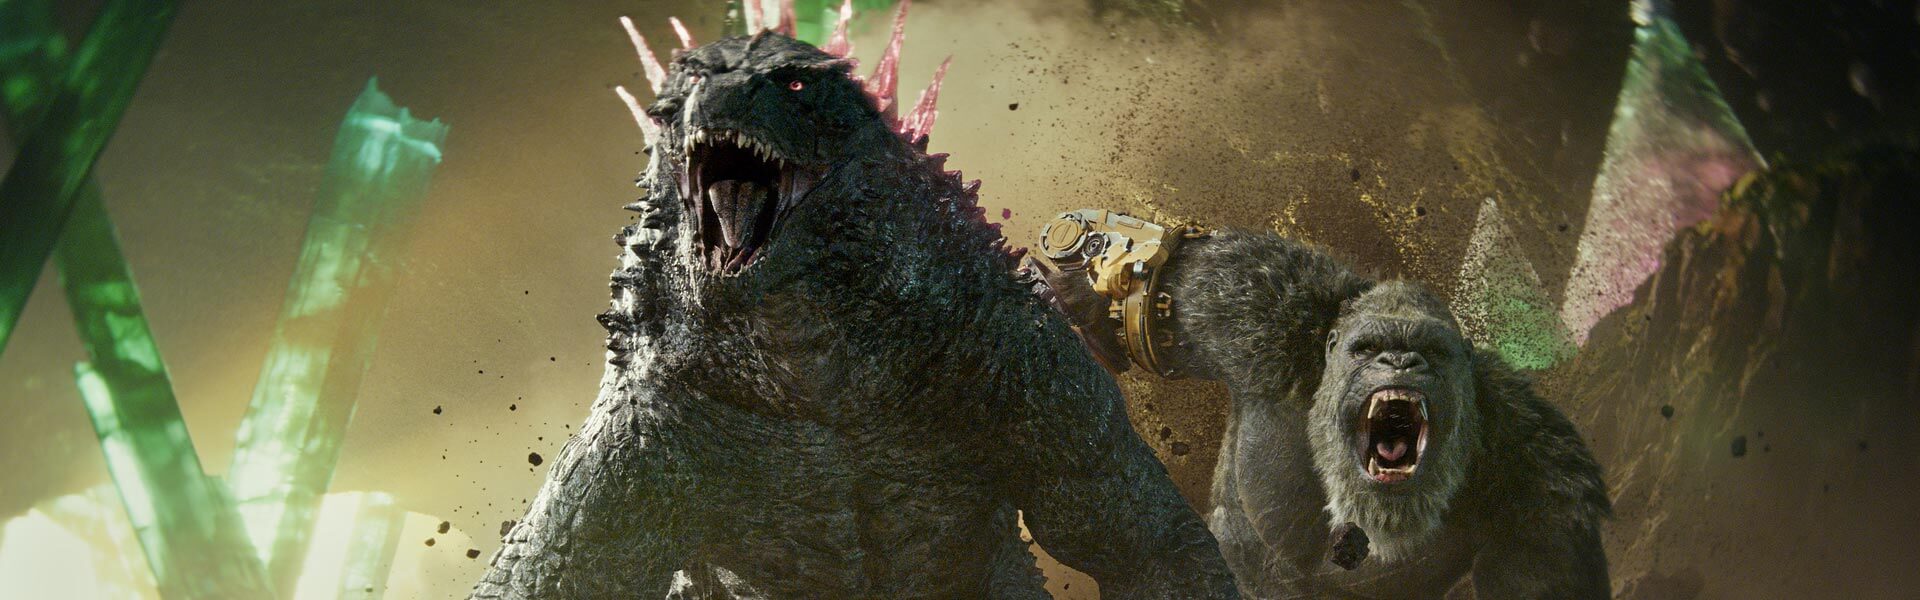 Crítica de ‘Godzilla y Kong’: cine de “monster trucks”